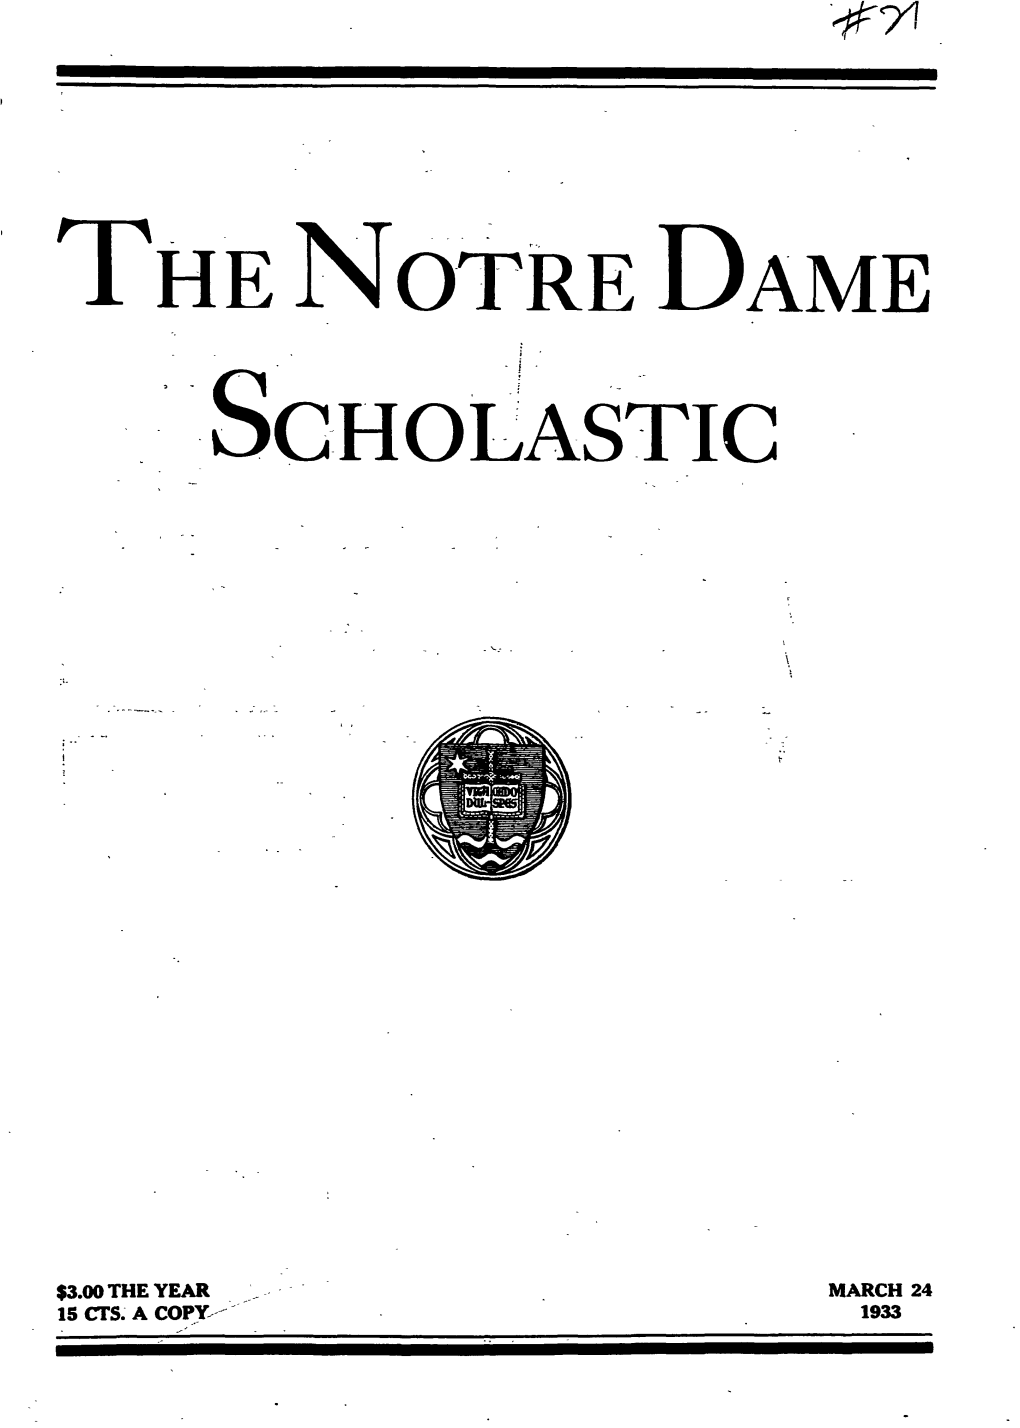 Notre Dame Scholastic, Vol. 66, No. 21